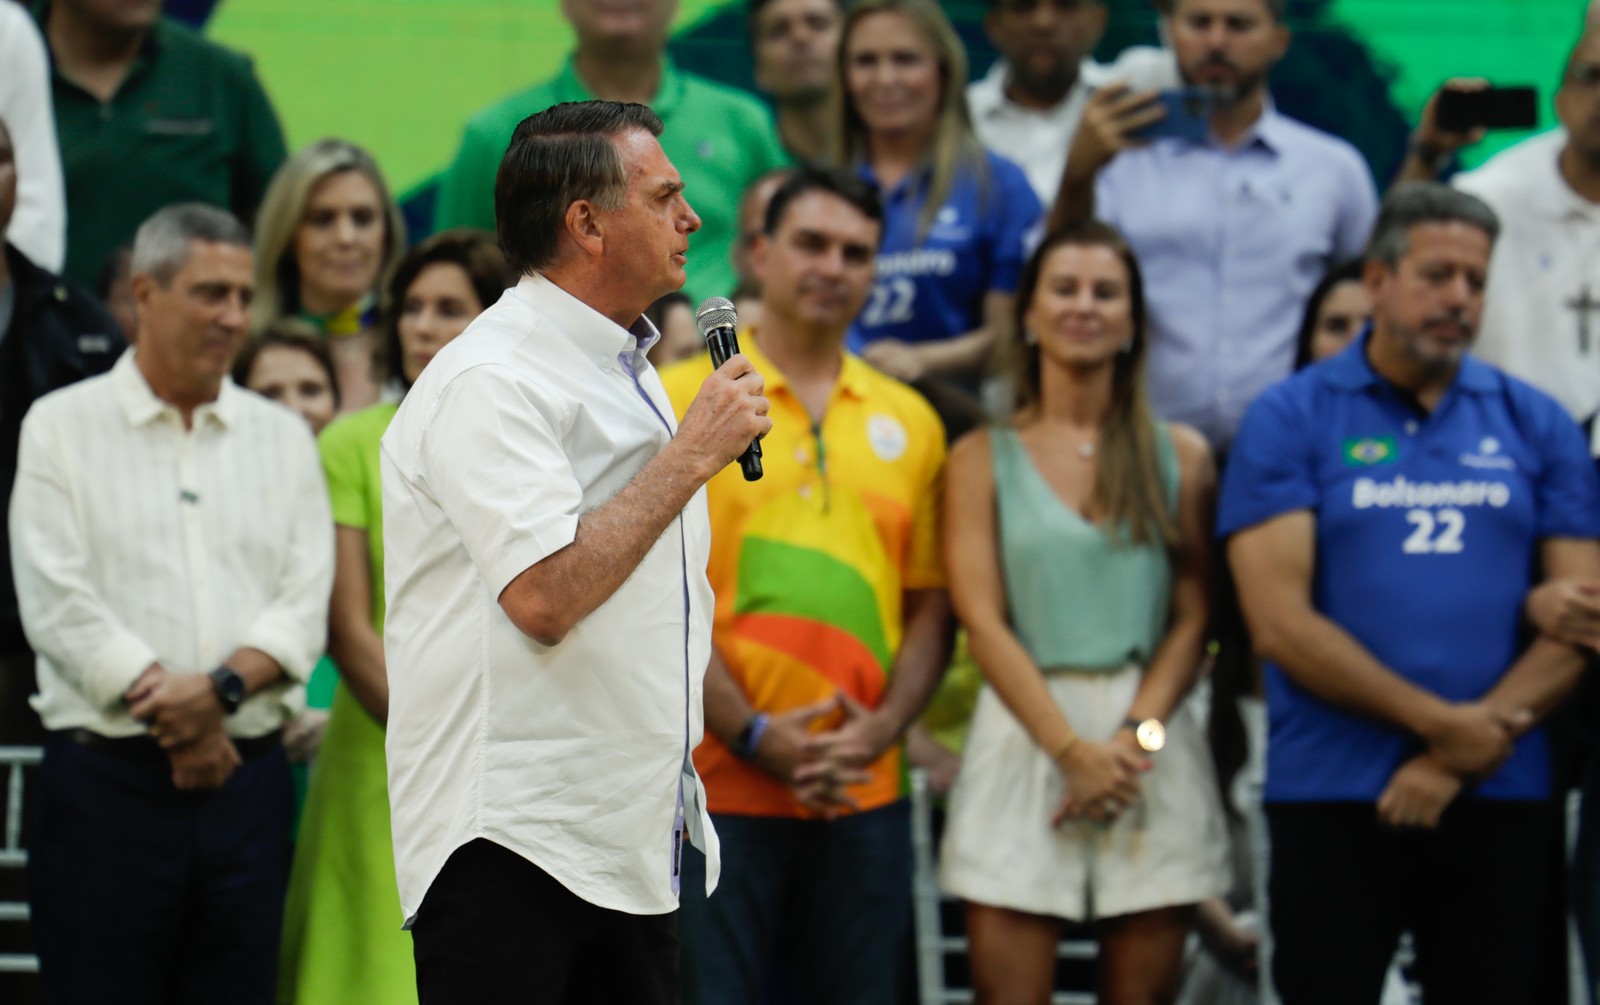 Com o vice Braga Netto e o presidente da Câmara, Arthur Lira (DEM), Bolsonaro oficiou sua candidatura à reeleição — Foto: Gabriel de Paiva / Agência O Globo